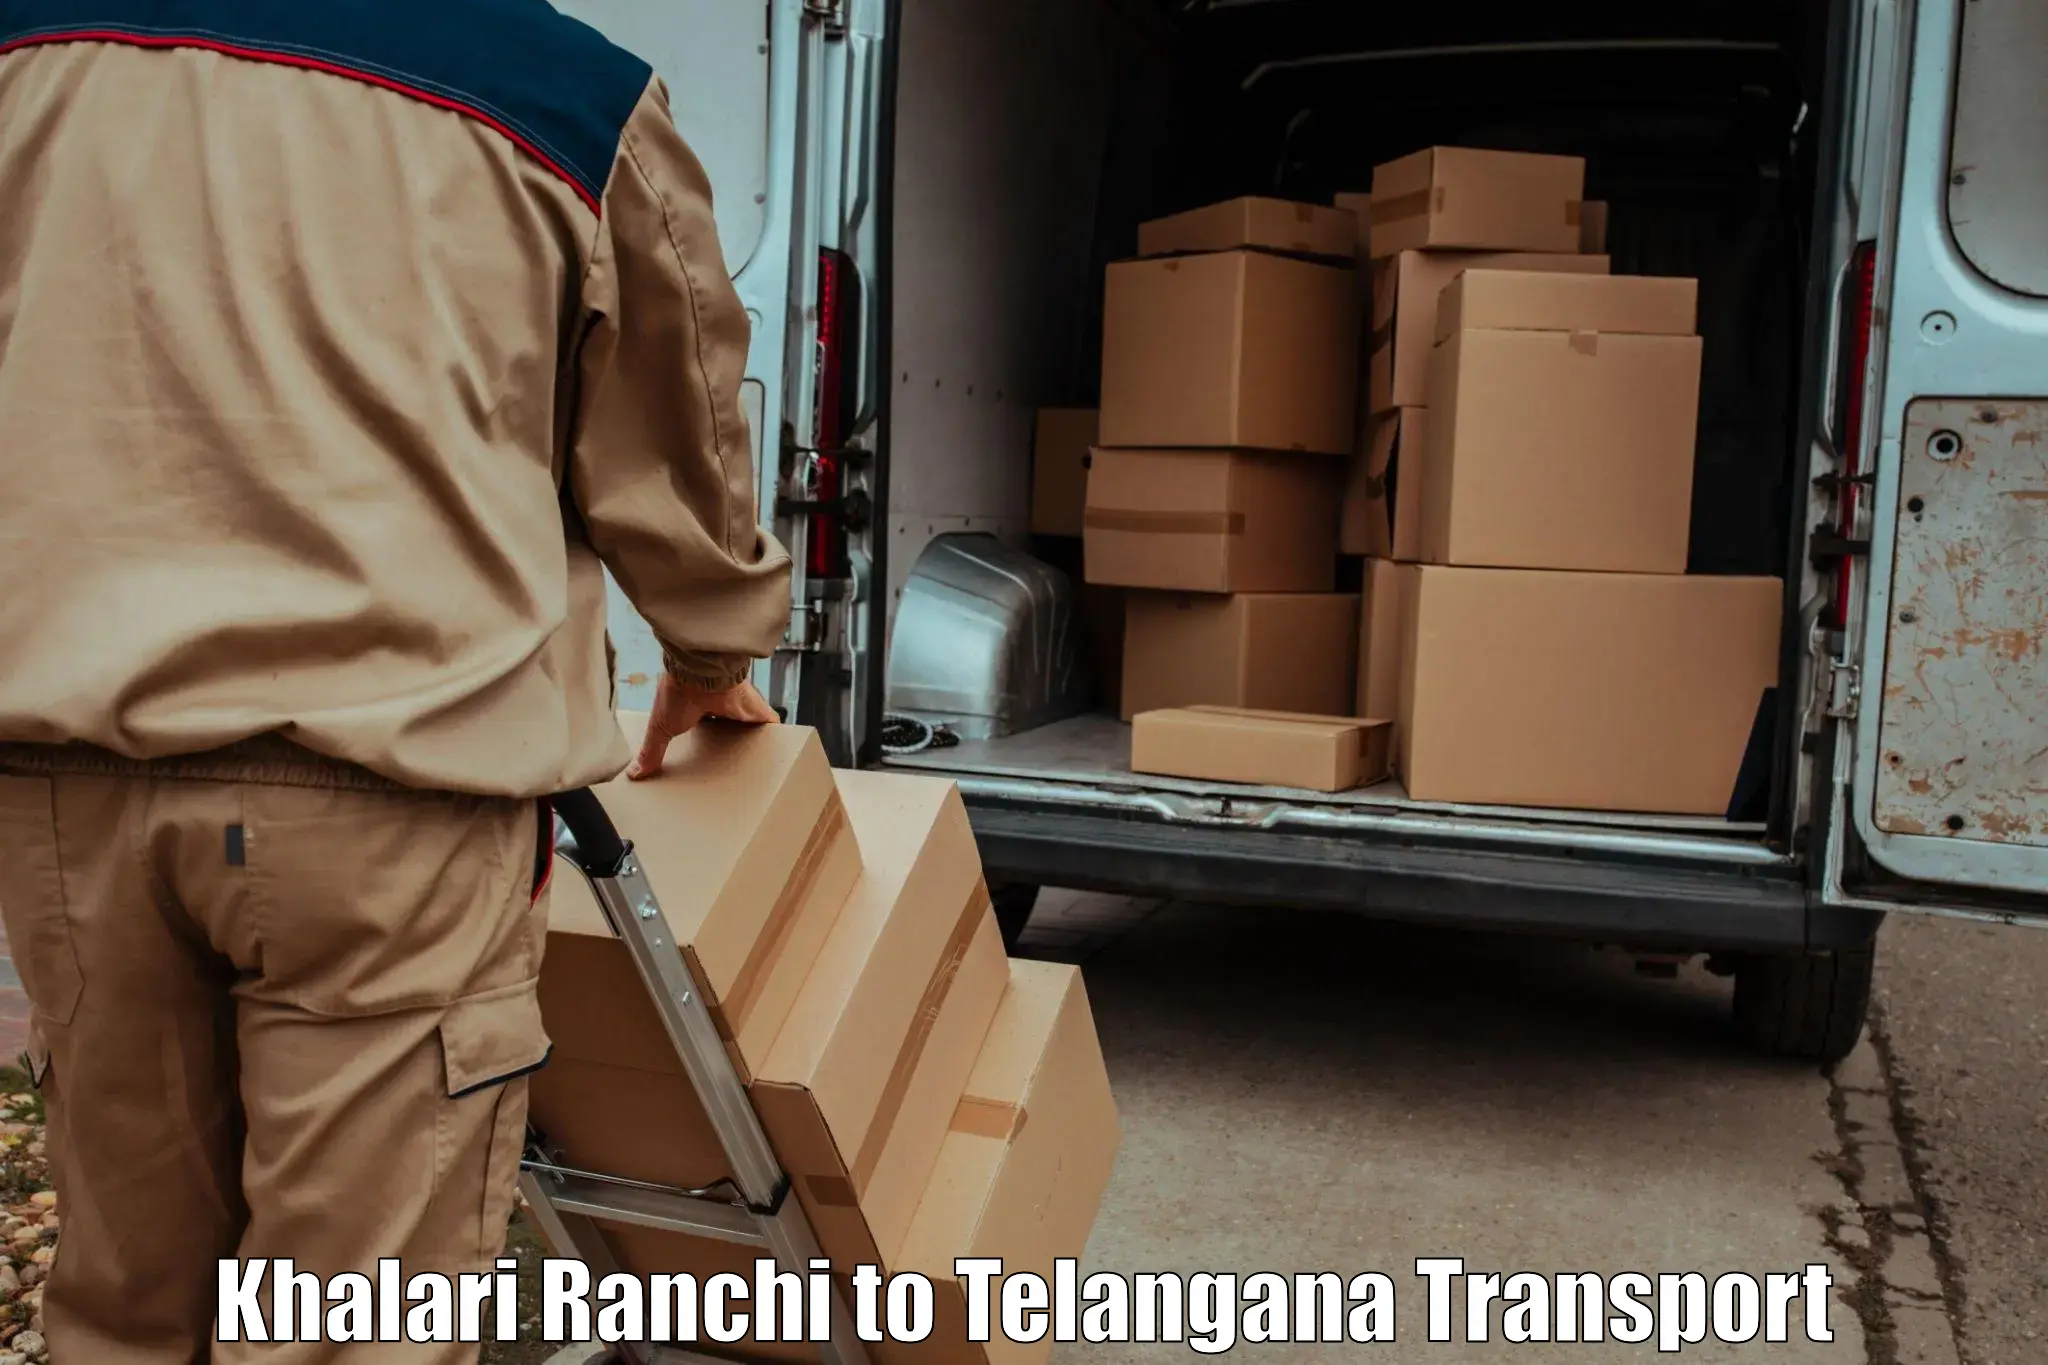 Goods transport services in Khalari Ranchi to Jainoor